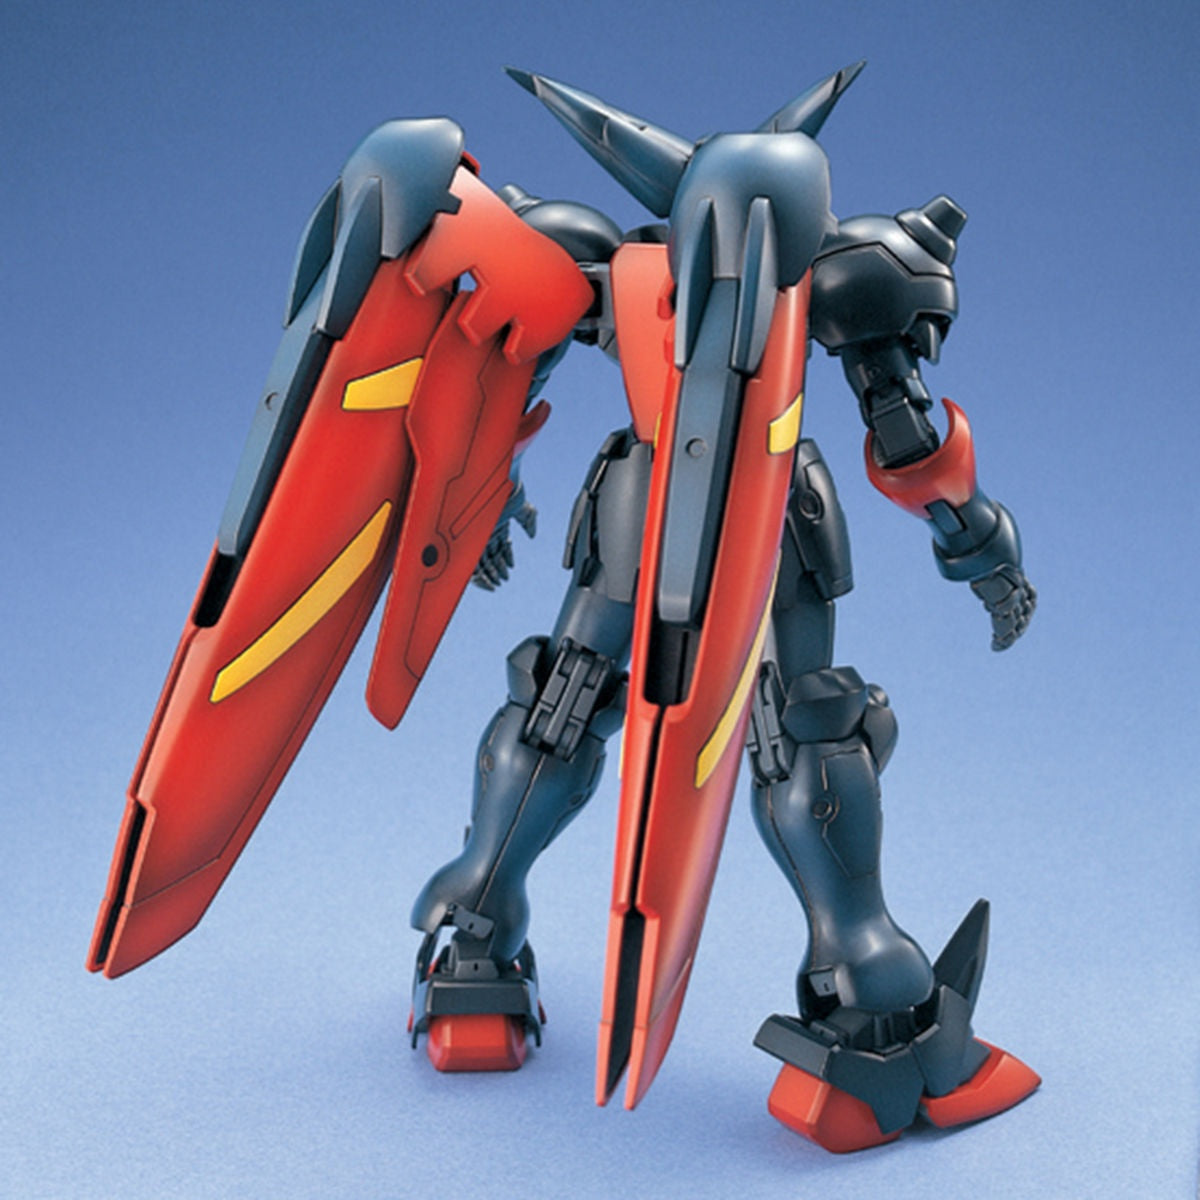 1/100 MG GF13-001NH II Master Gundam-Bandai-Ace Cards &amp; Collectibles